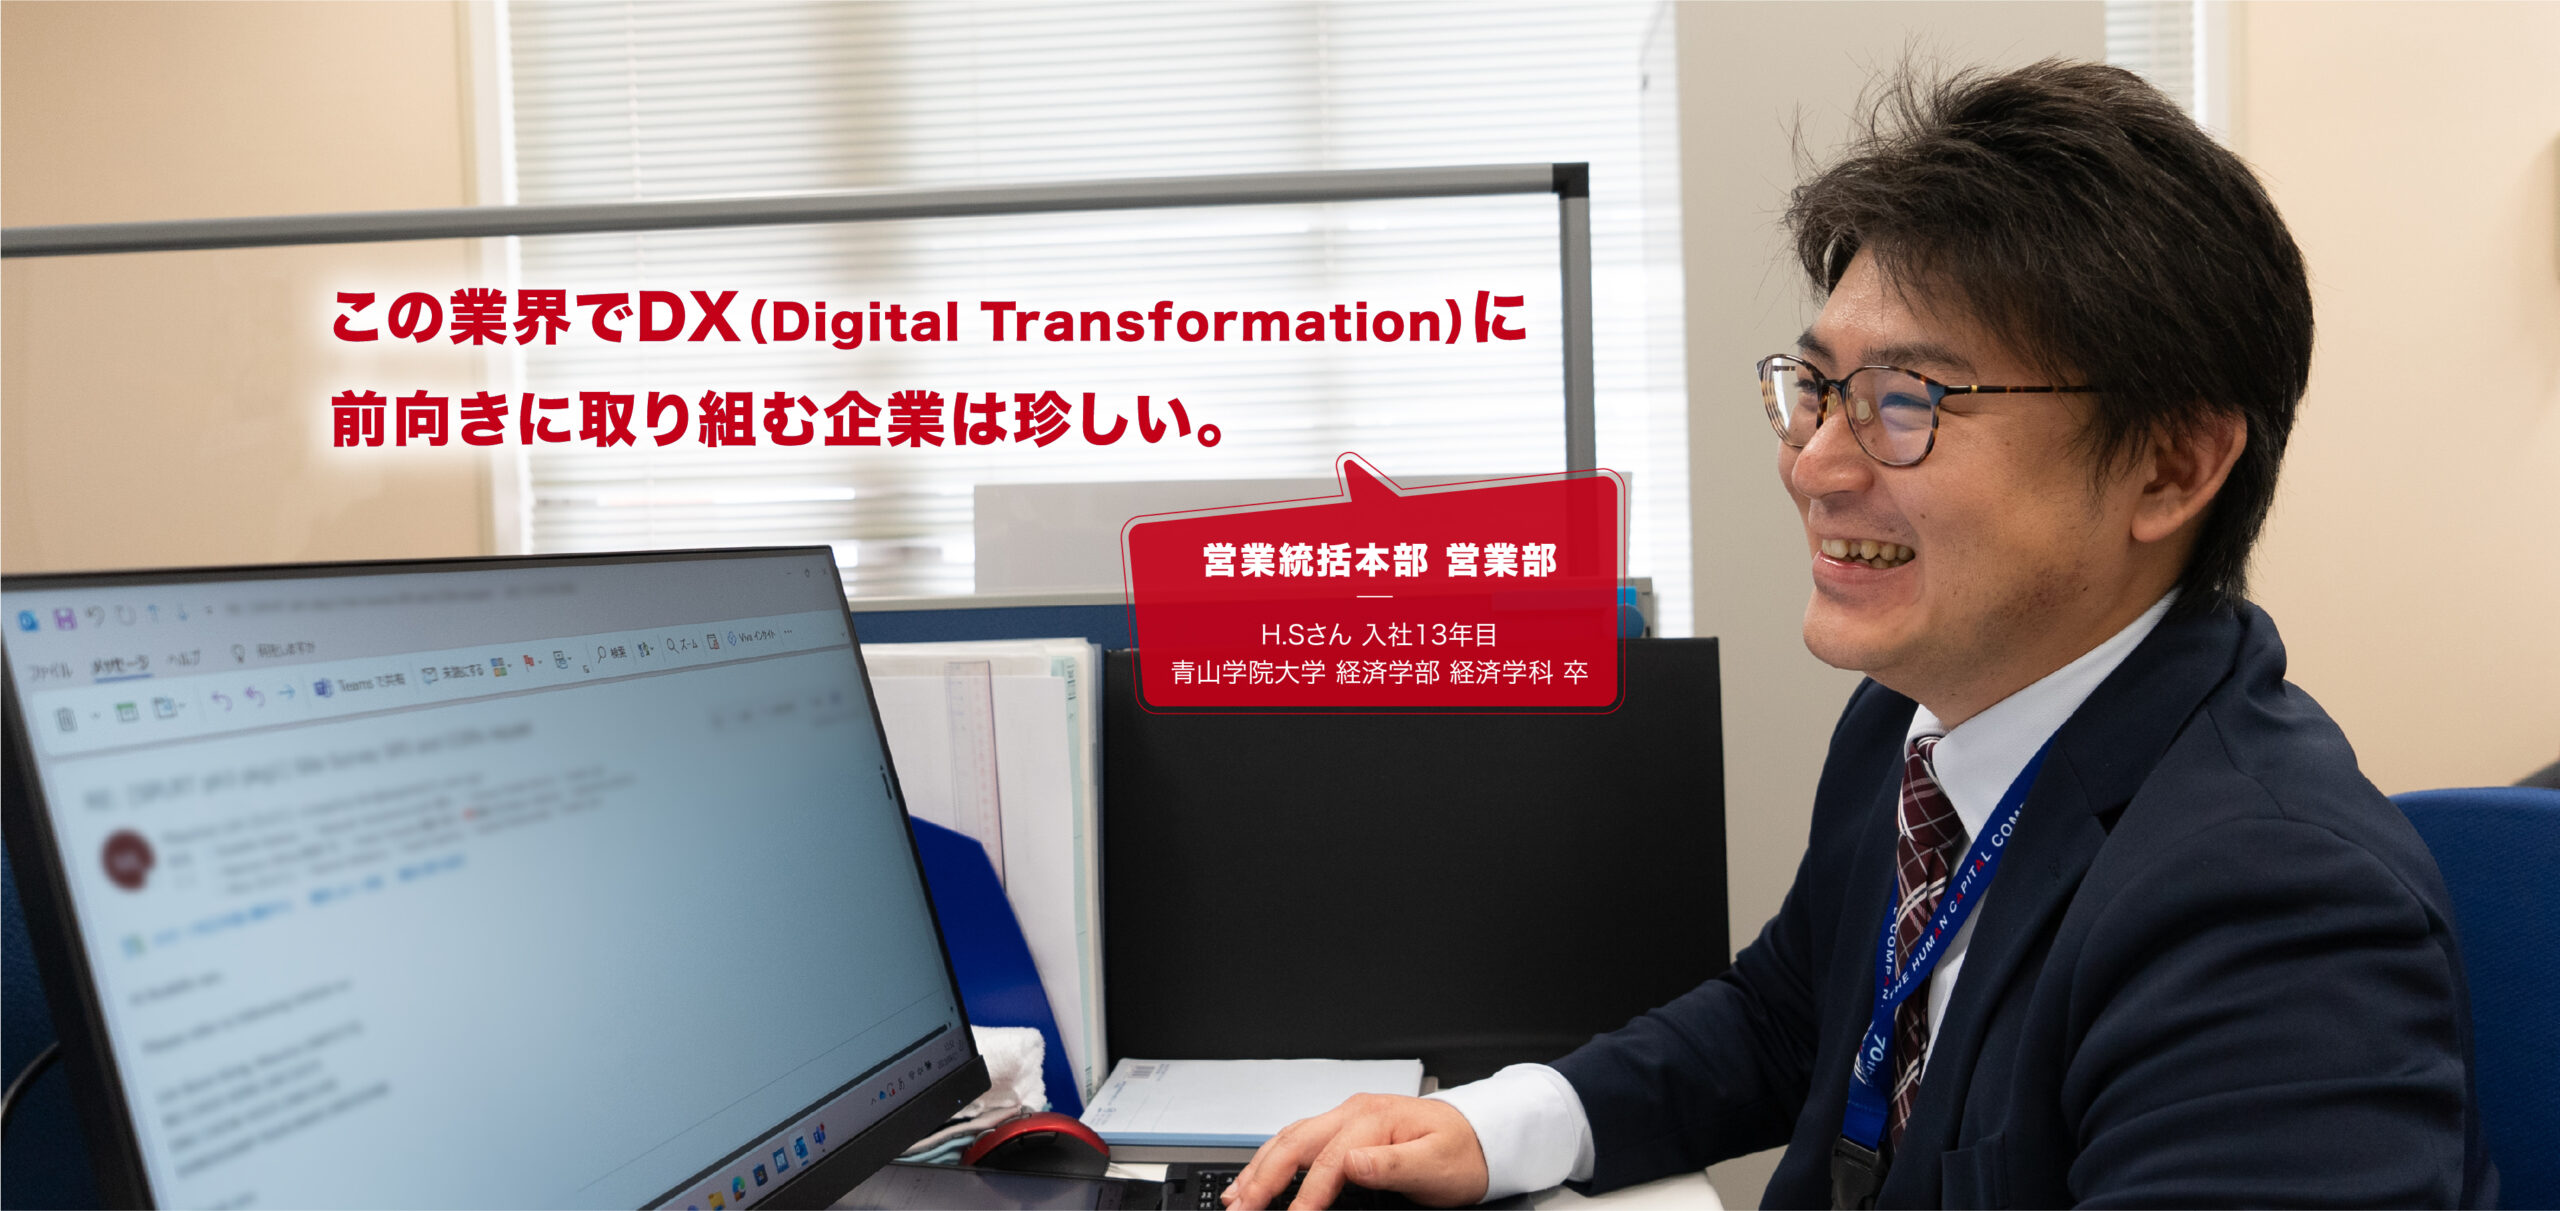 この業界でDX（Digital Transformation）に前向きに取り組む企業は珍しい。